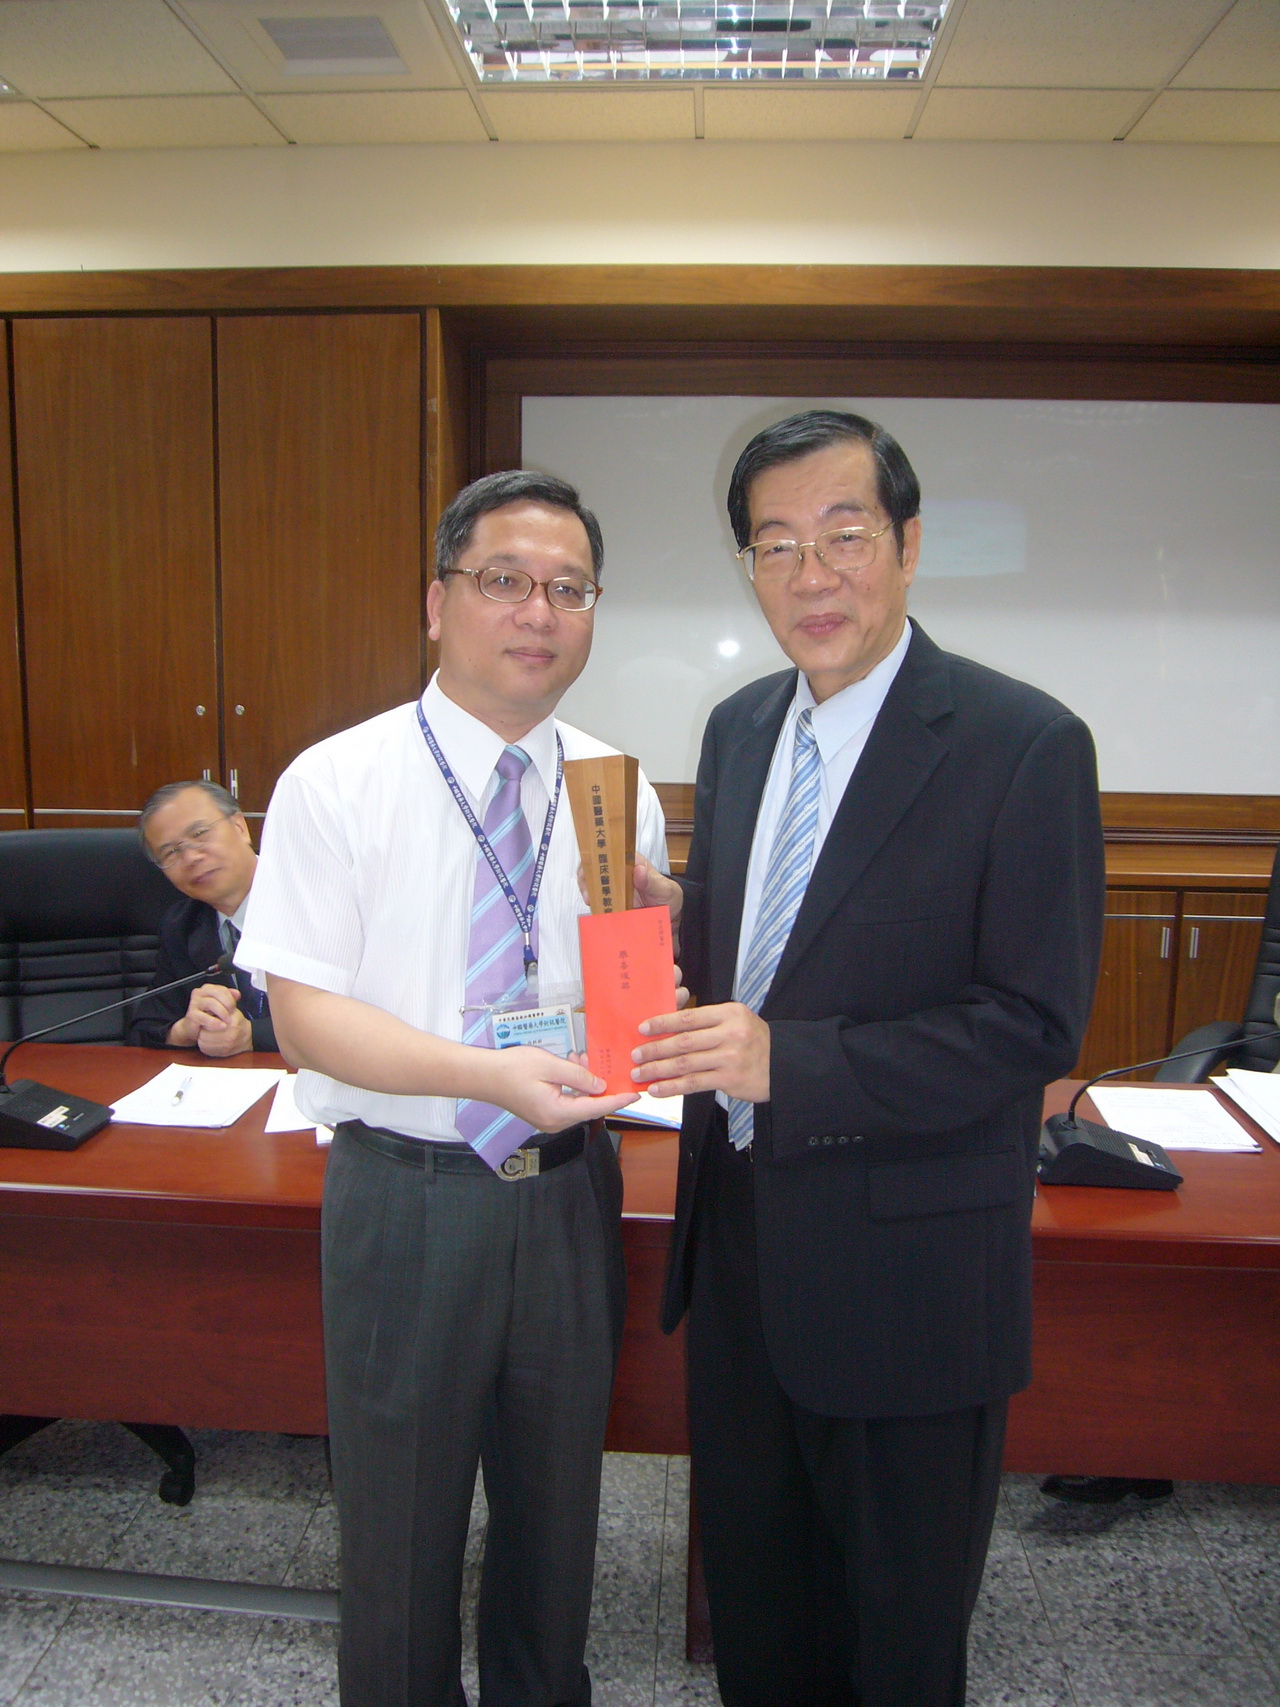 2010年臨床醫學教育貢獻獎得獎人徐武輝醫師榮獲校長黃榮村頒獎表揚